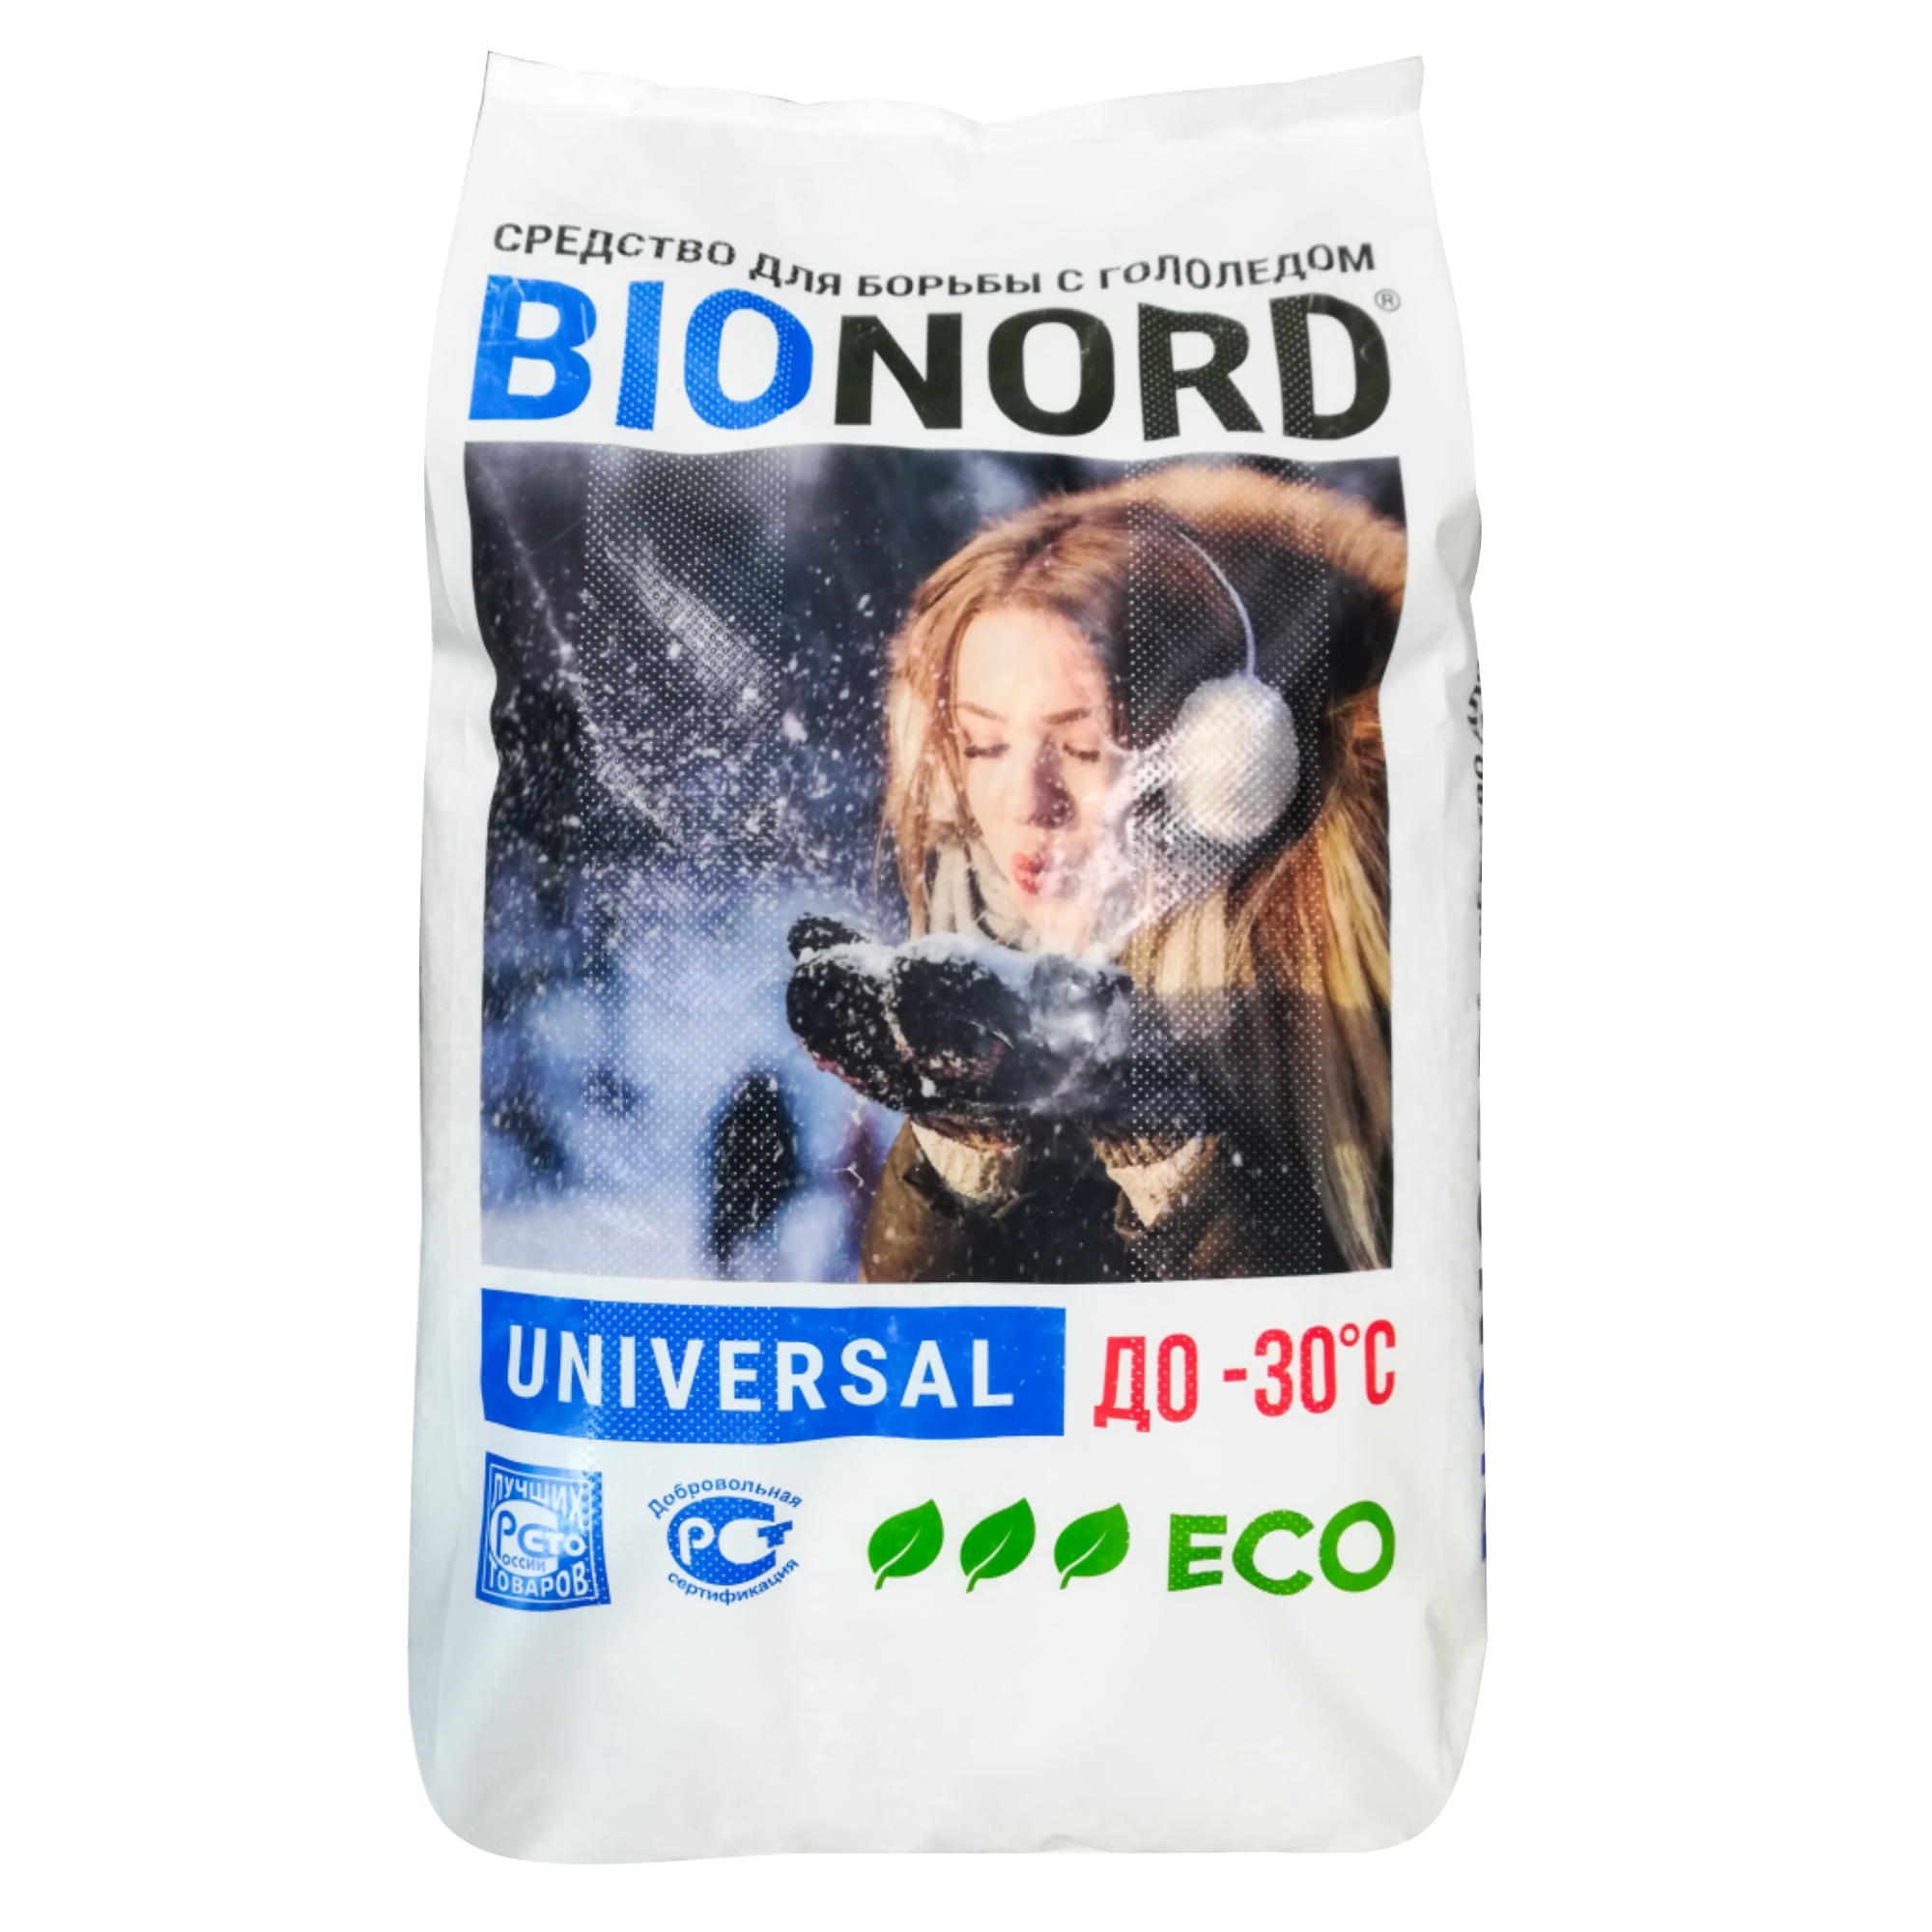 Реагент противогололедный BIONORD Универсальный 23 кг реагент фертика icecare green до 20c 10кг